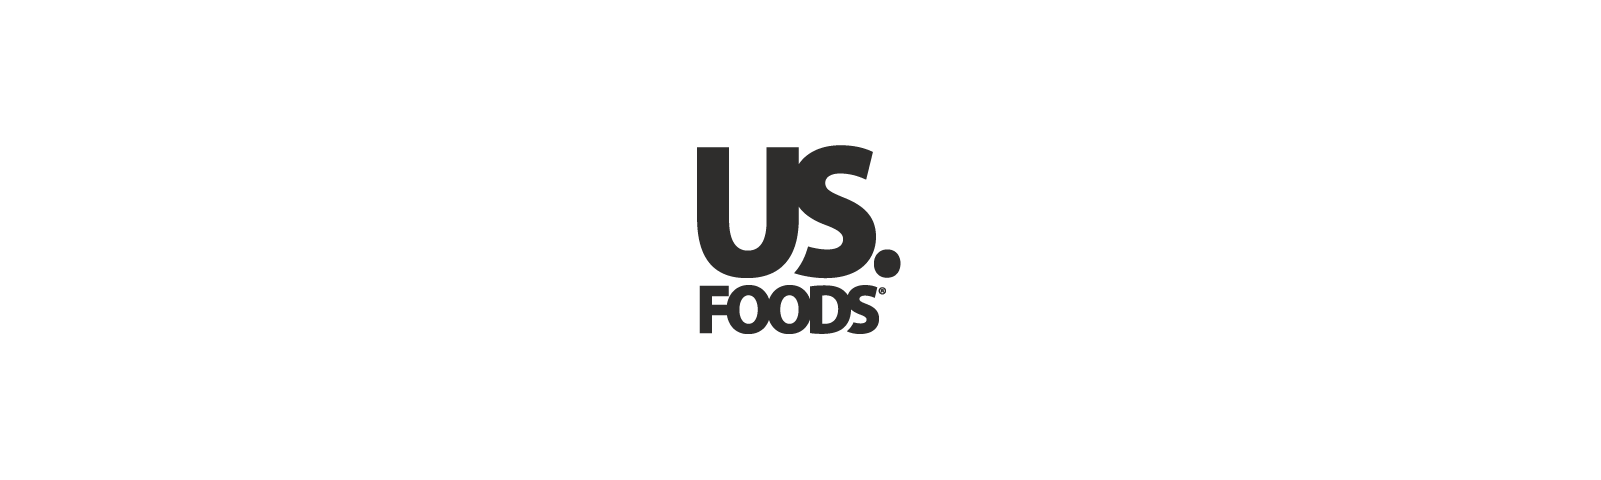 Us-Food